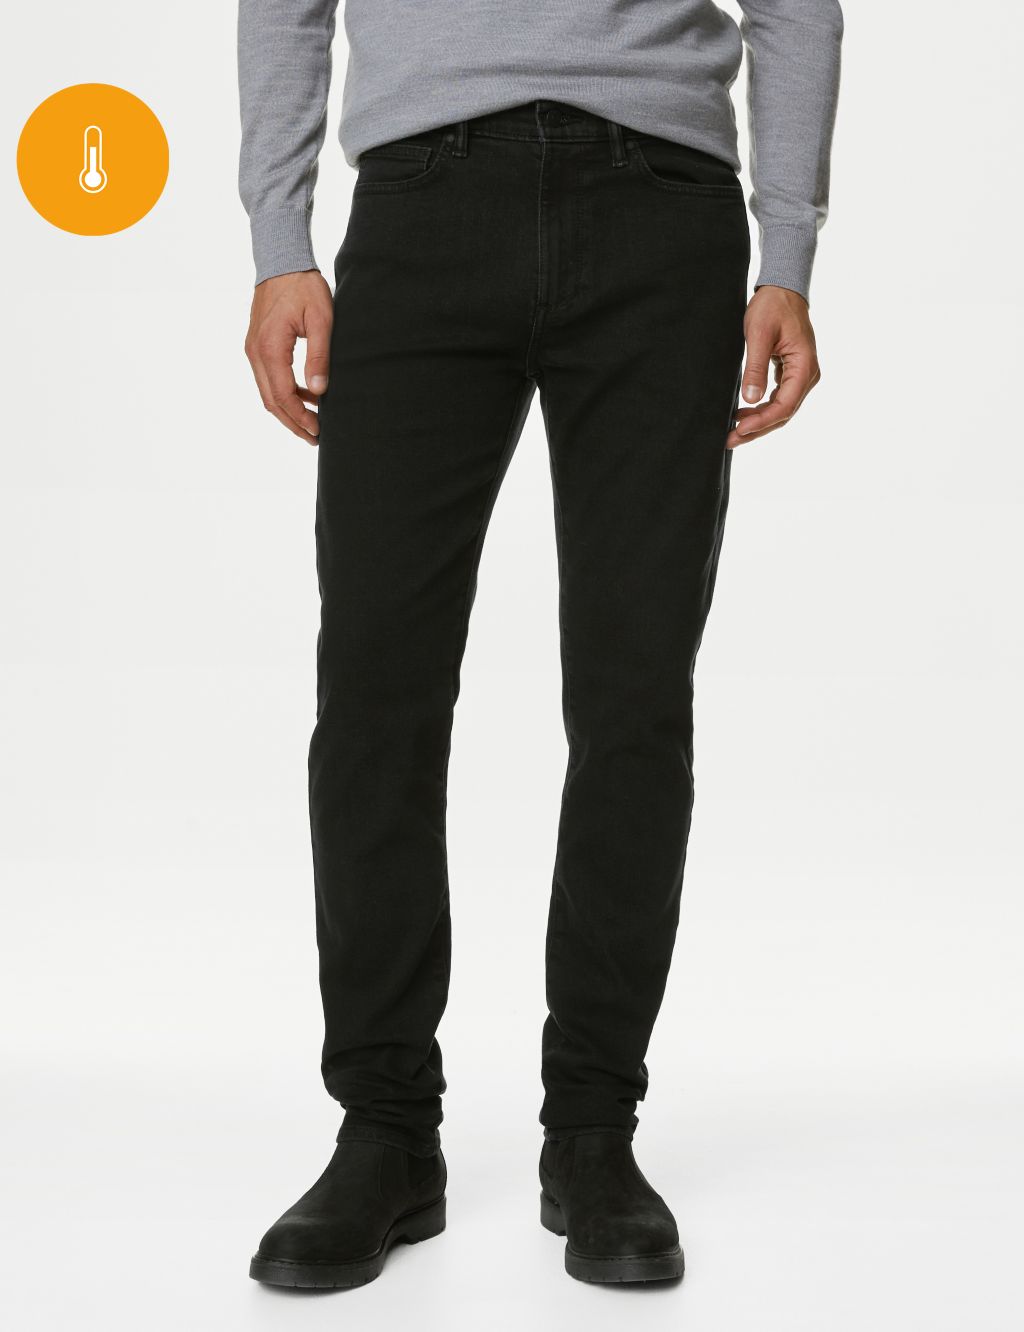 Men's Black Jeans | M&S